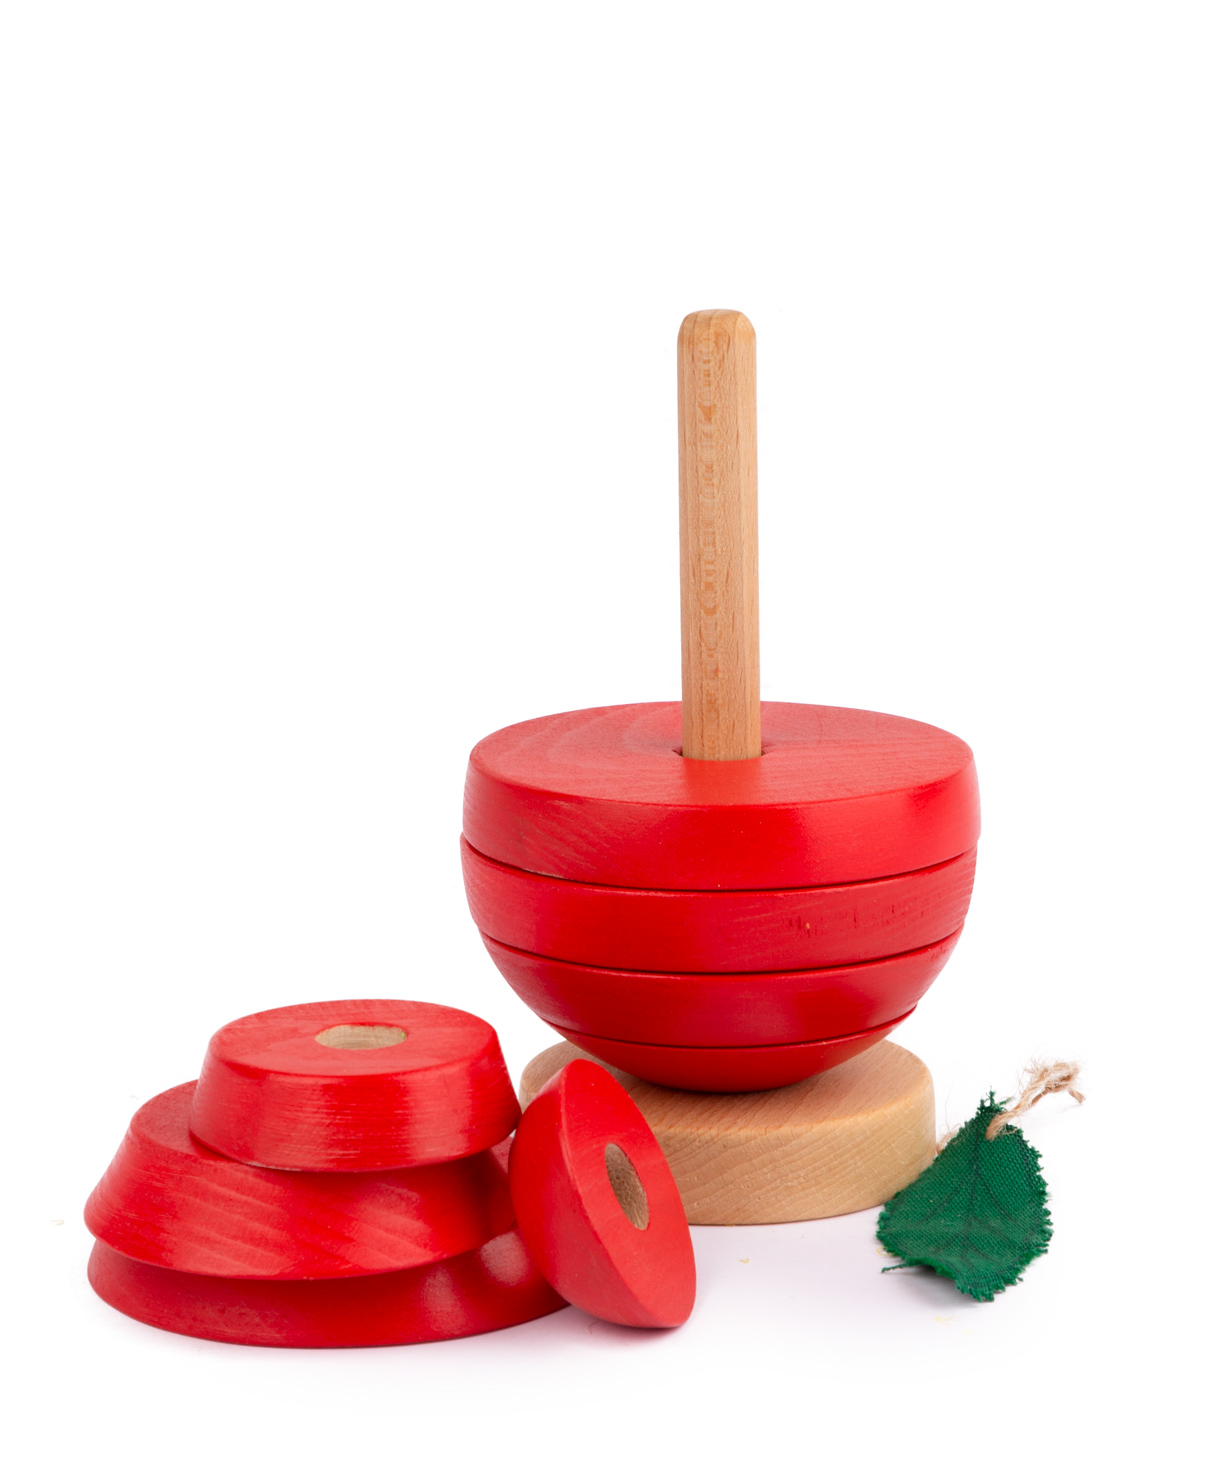 Խաղալիք «Im wooden toys» աշտարակ, տանձ, կարմիր